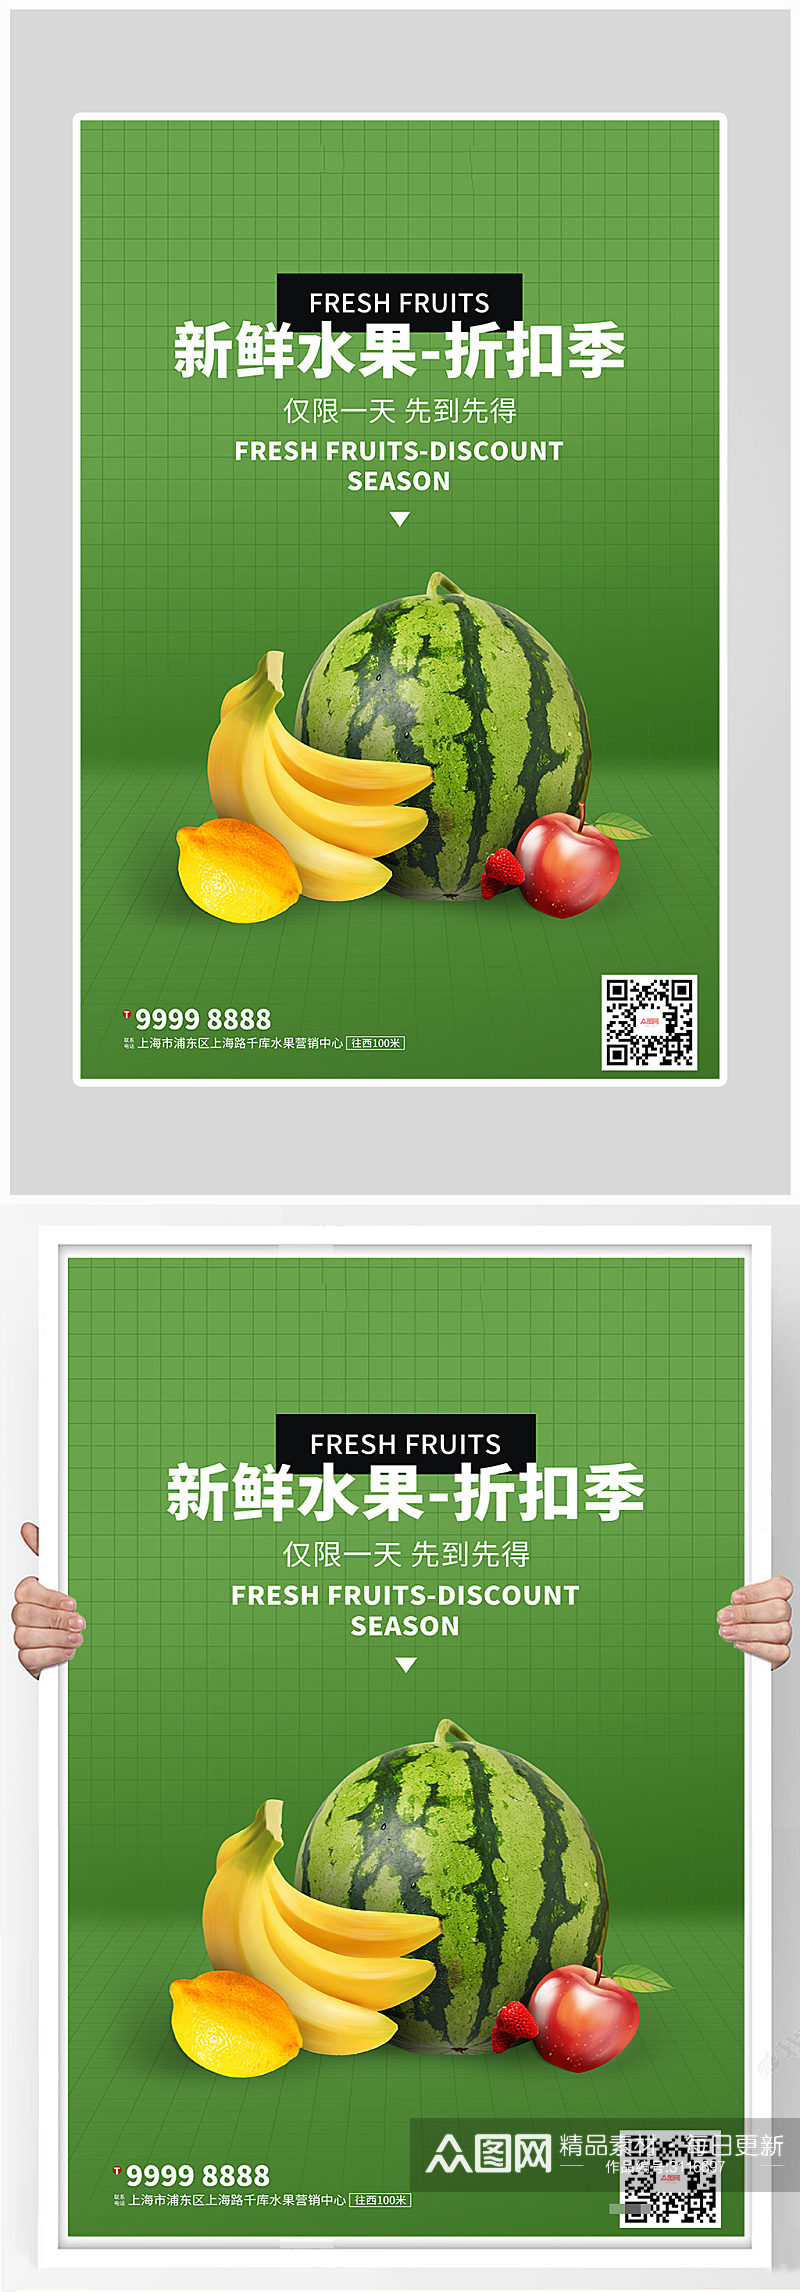 创意新鲜水果打折海报设计素材